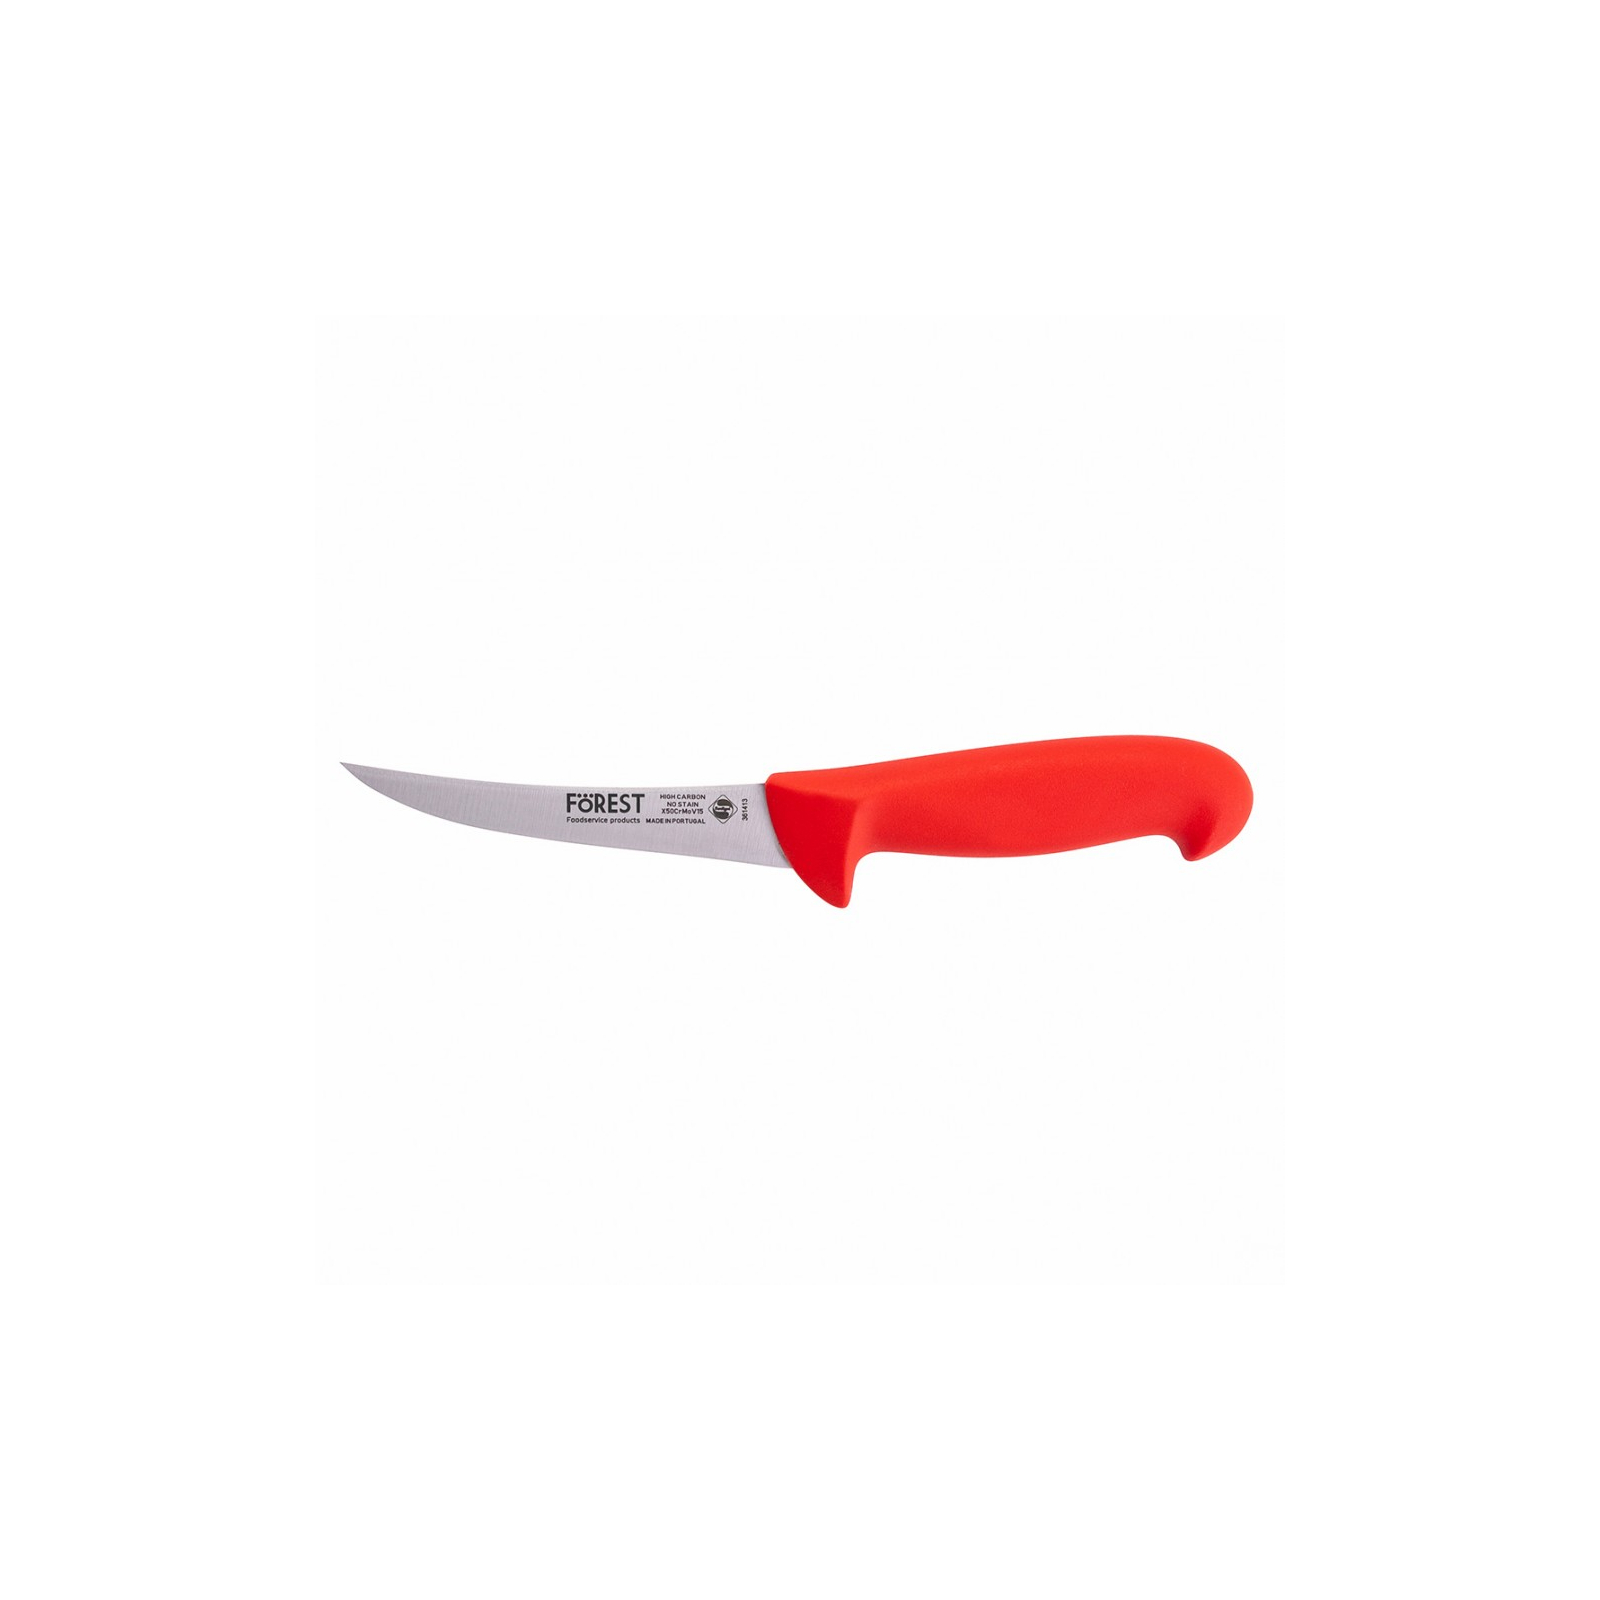 Кухонный нож FoREST обвалювальний напівгнучкий 130 мм Червоний (361413)